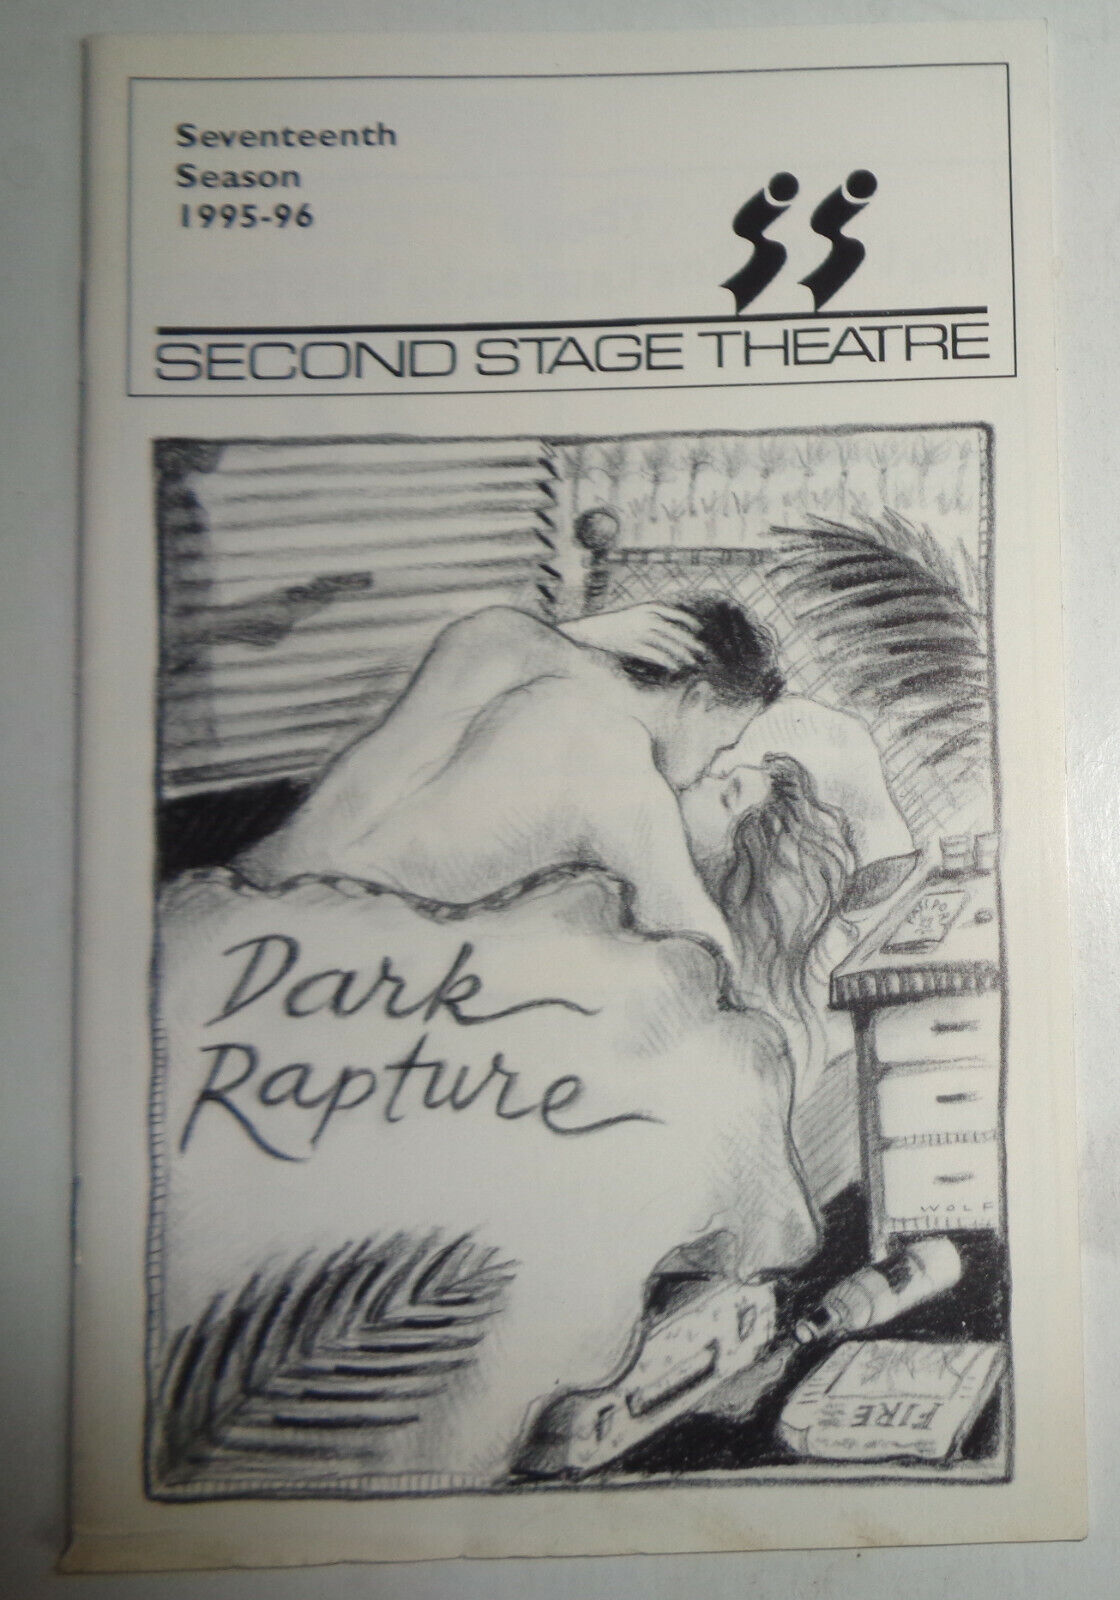 Dark Rapture - Souvenir Program - New York: Second Stage Theatre, 1995